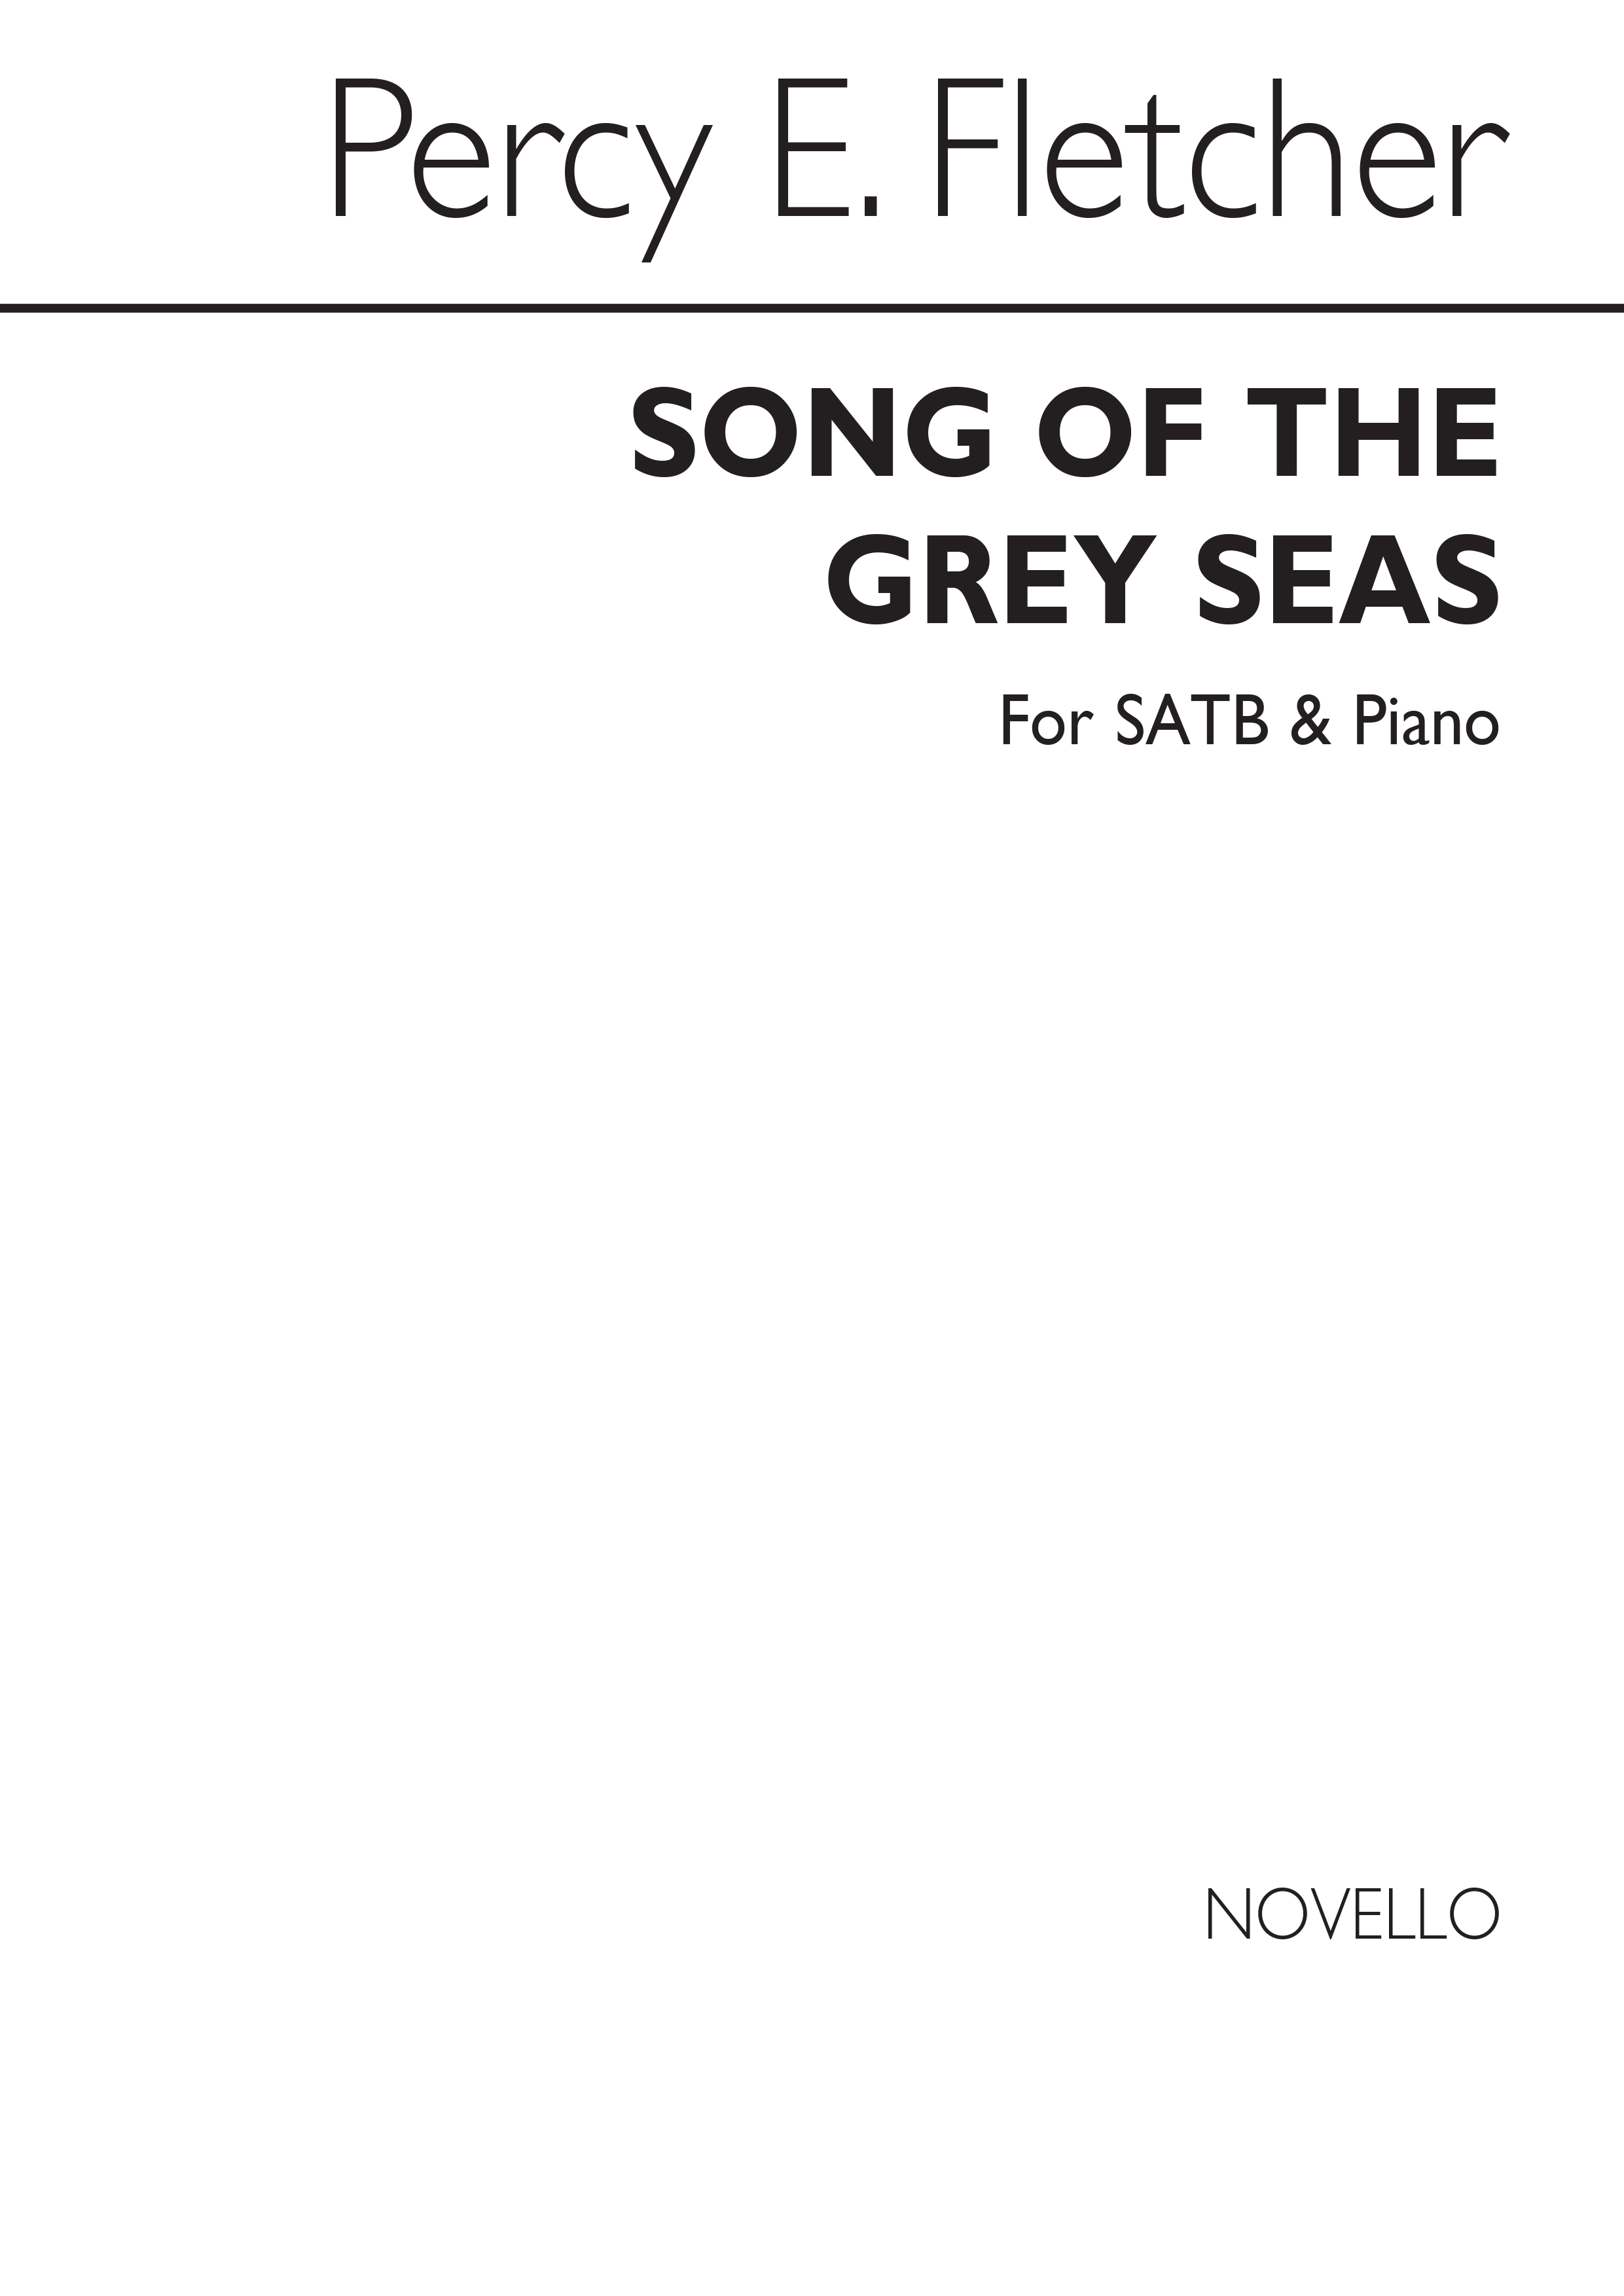 Percy E. Fletcher: Song Of The Grey Seas: SATB: Vocal Score